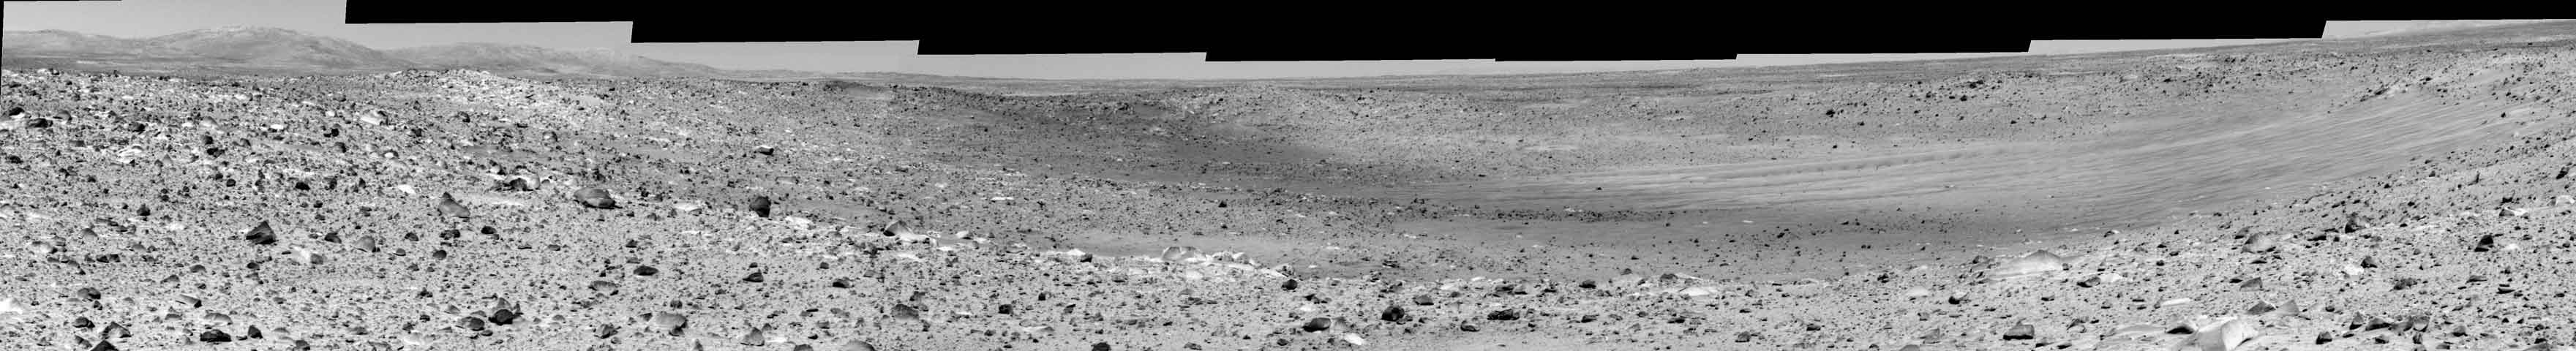 Missoula krateret på Mars